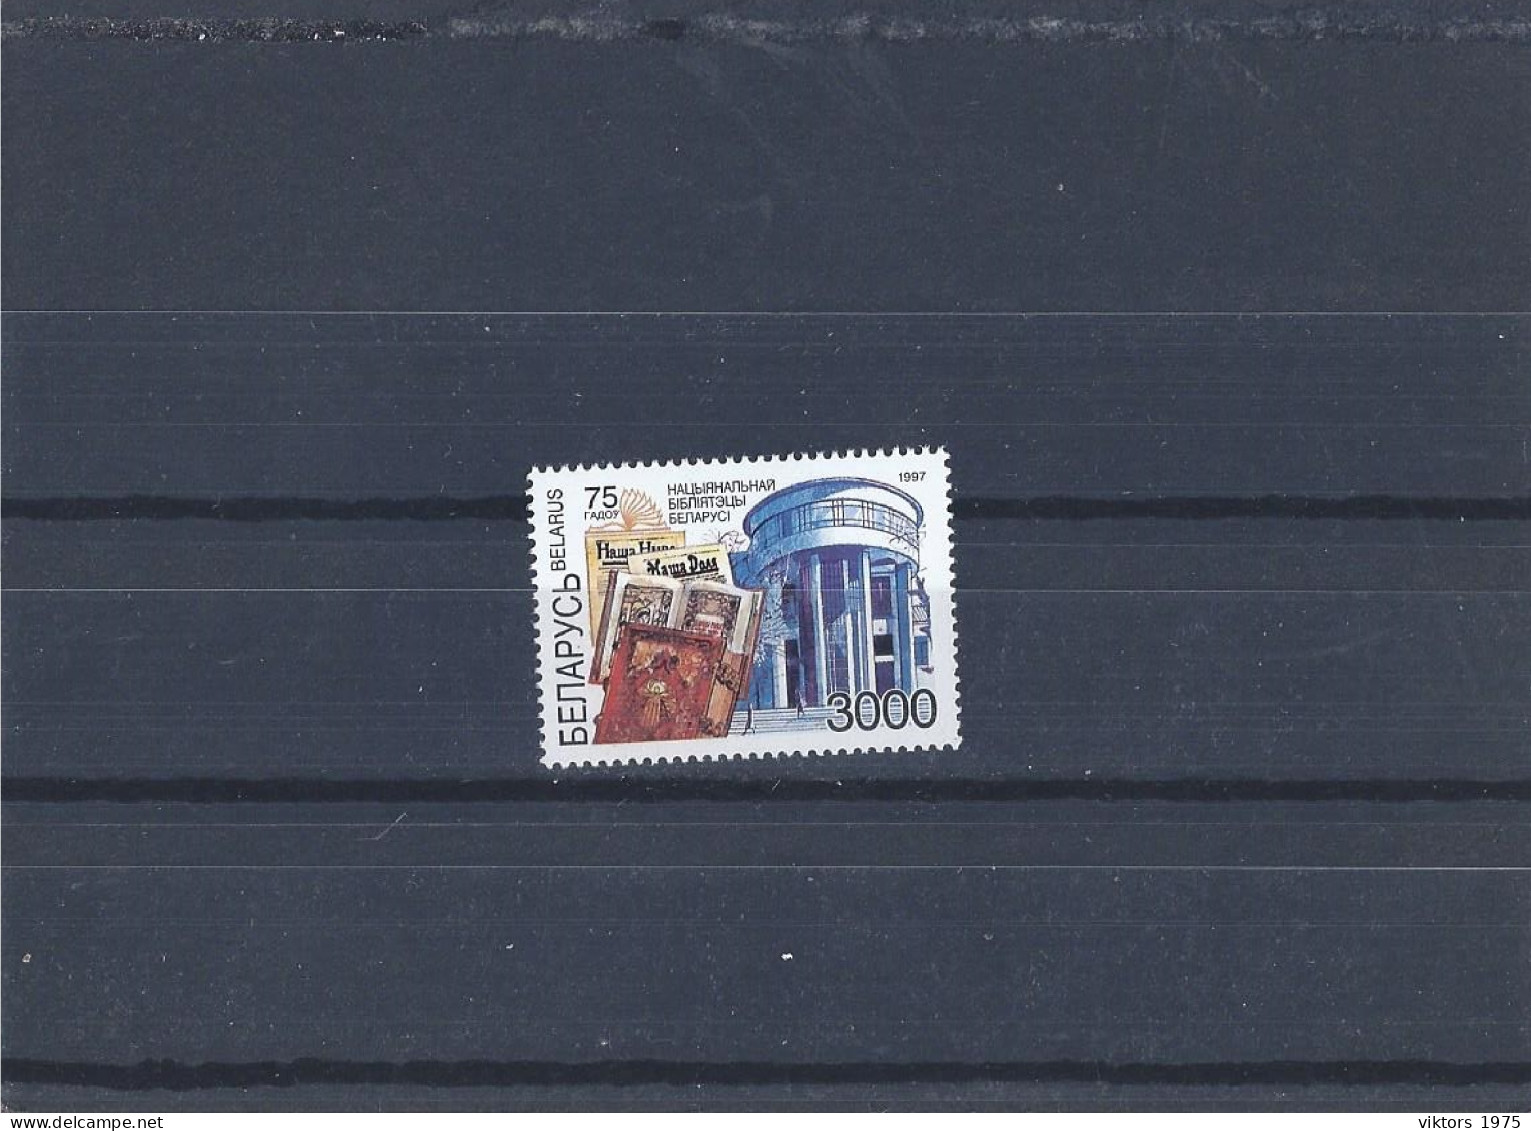 MNH Stamp Nr.235 In MICHEL Catalog - Belarus